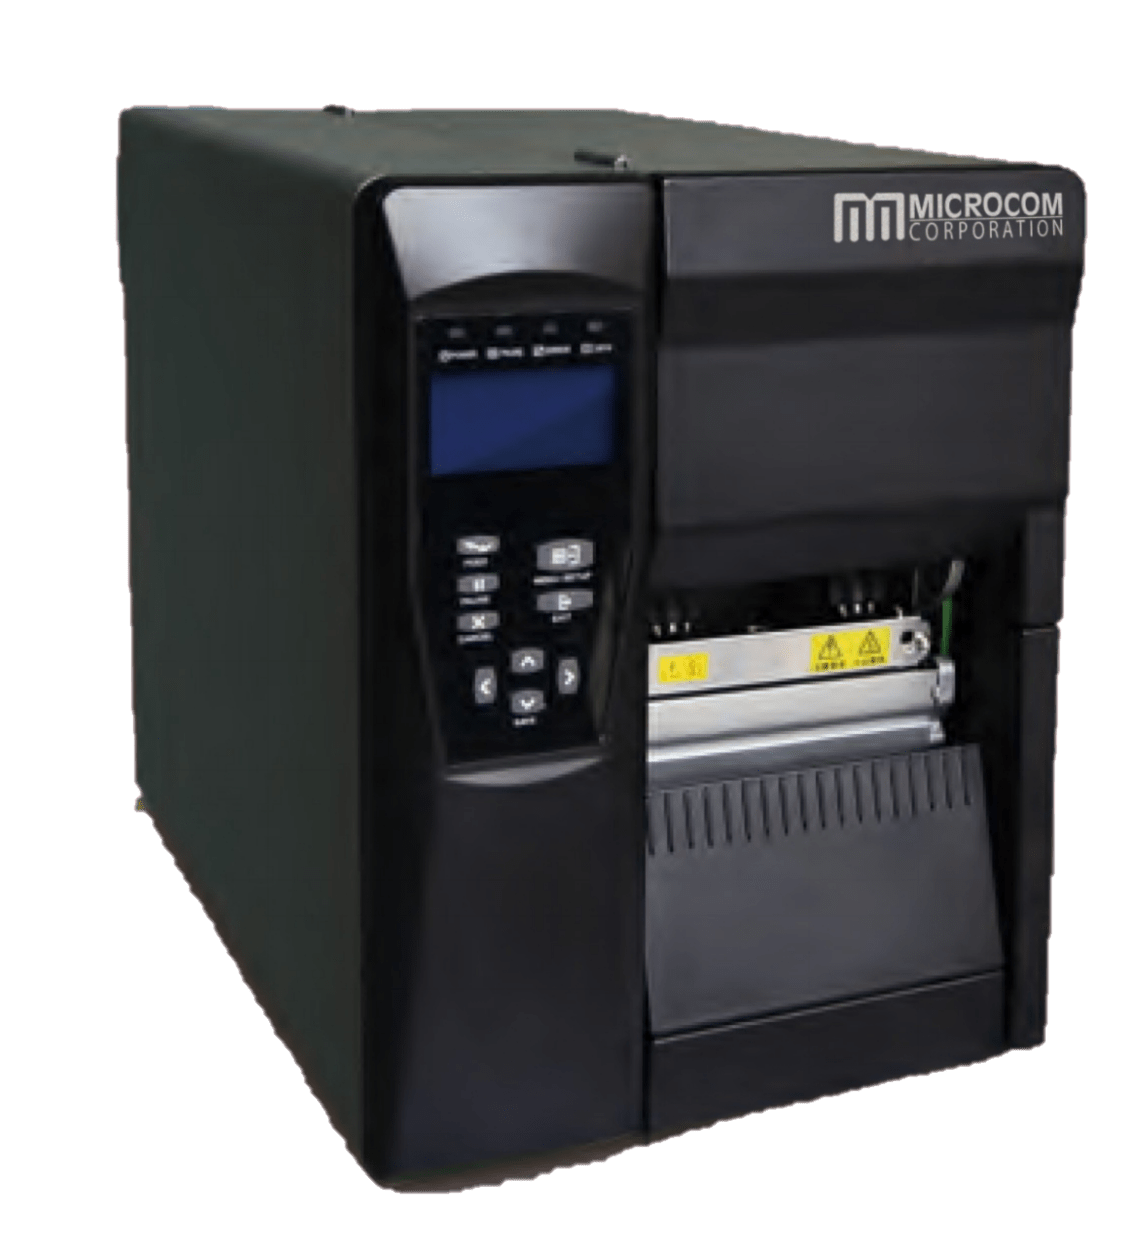 Microcom BPT-7400Thermal Label Printer